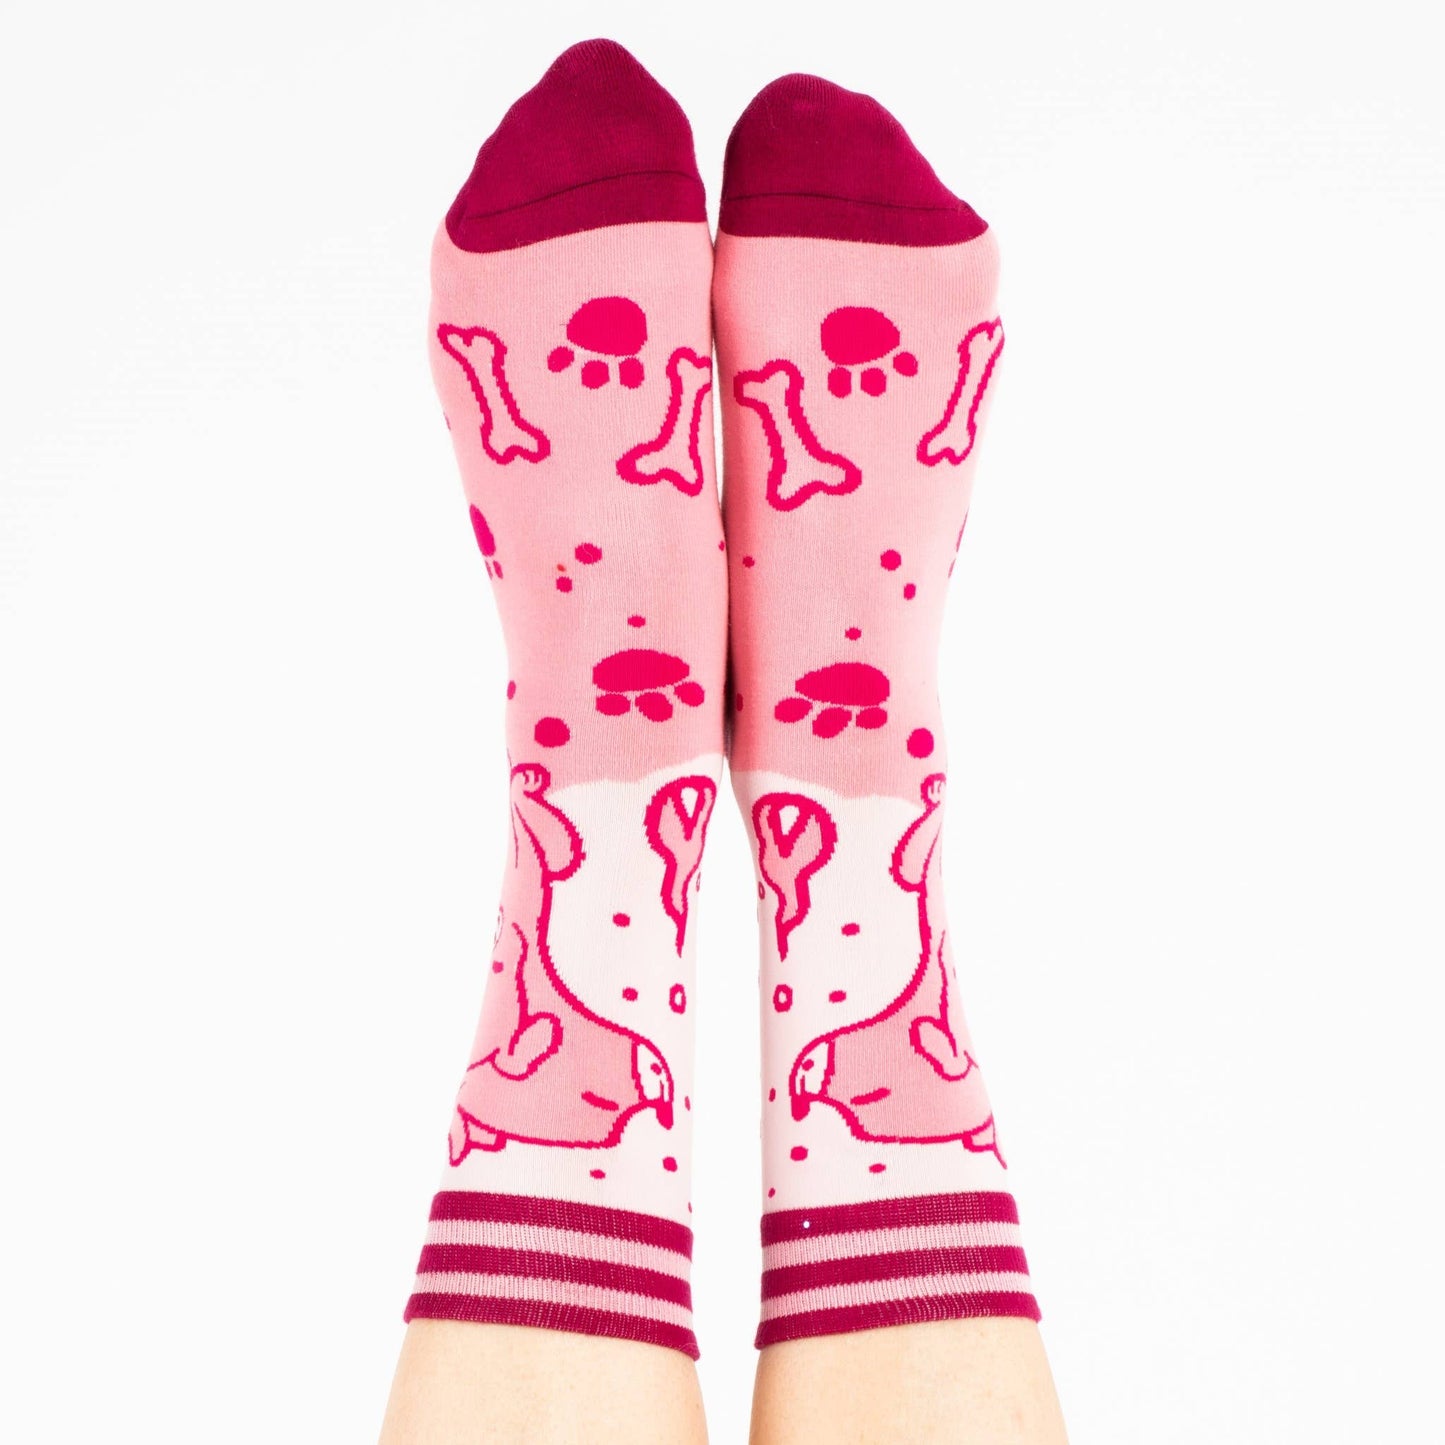 Cute Cerberus Socks | Mythical Multi-headed Dog Footwear